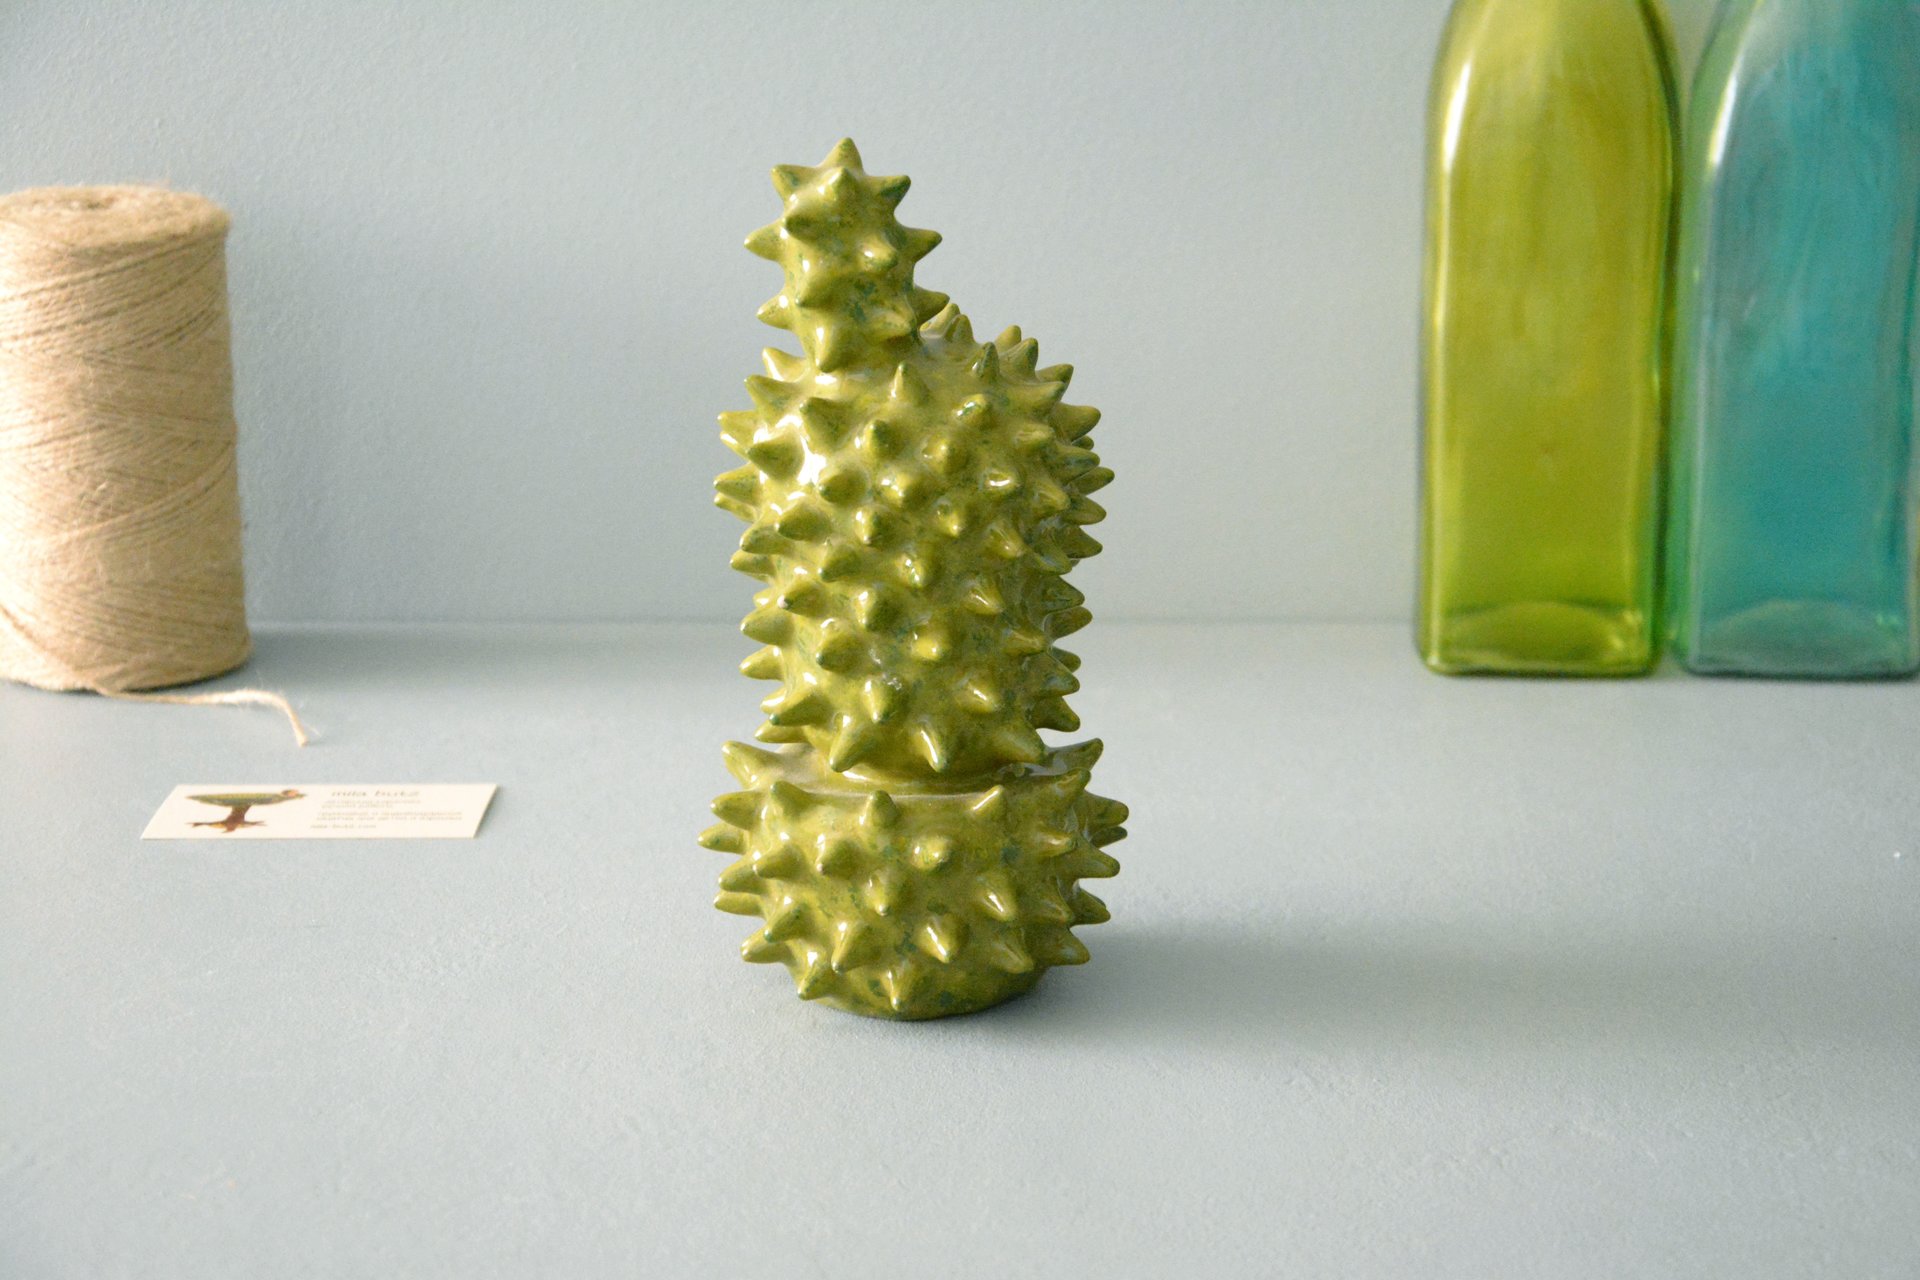 Декоративный кактус Эхинопсис - Кактусы керамические, высота - 21 см, фото 2 из 5.